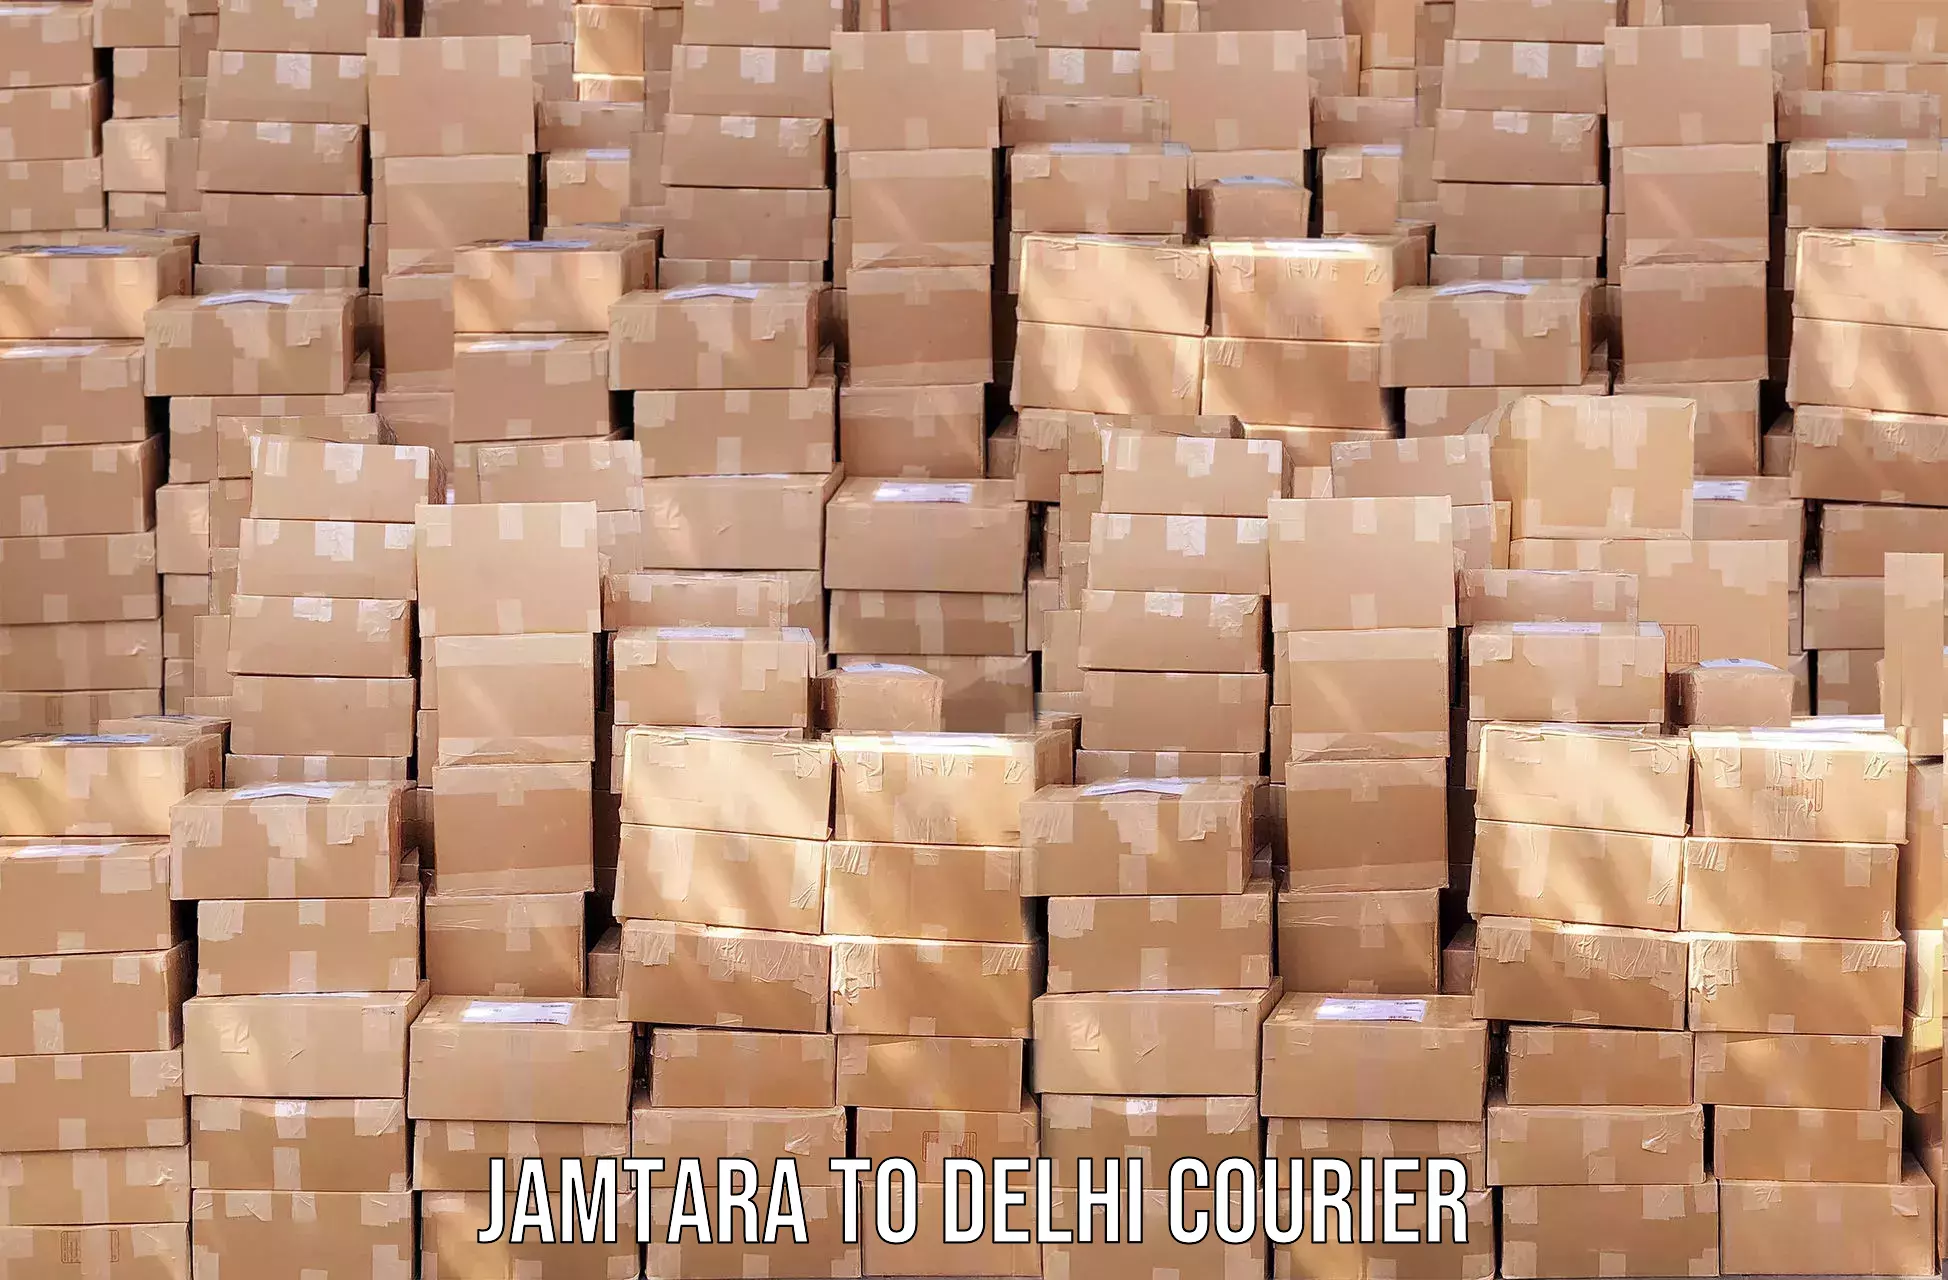 Local delivery service Jamtara to Kalkaji